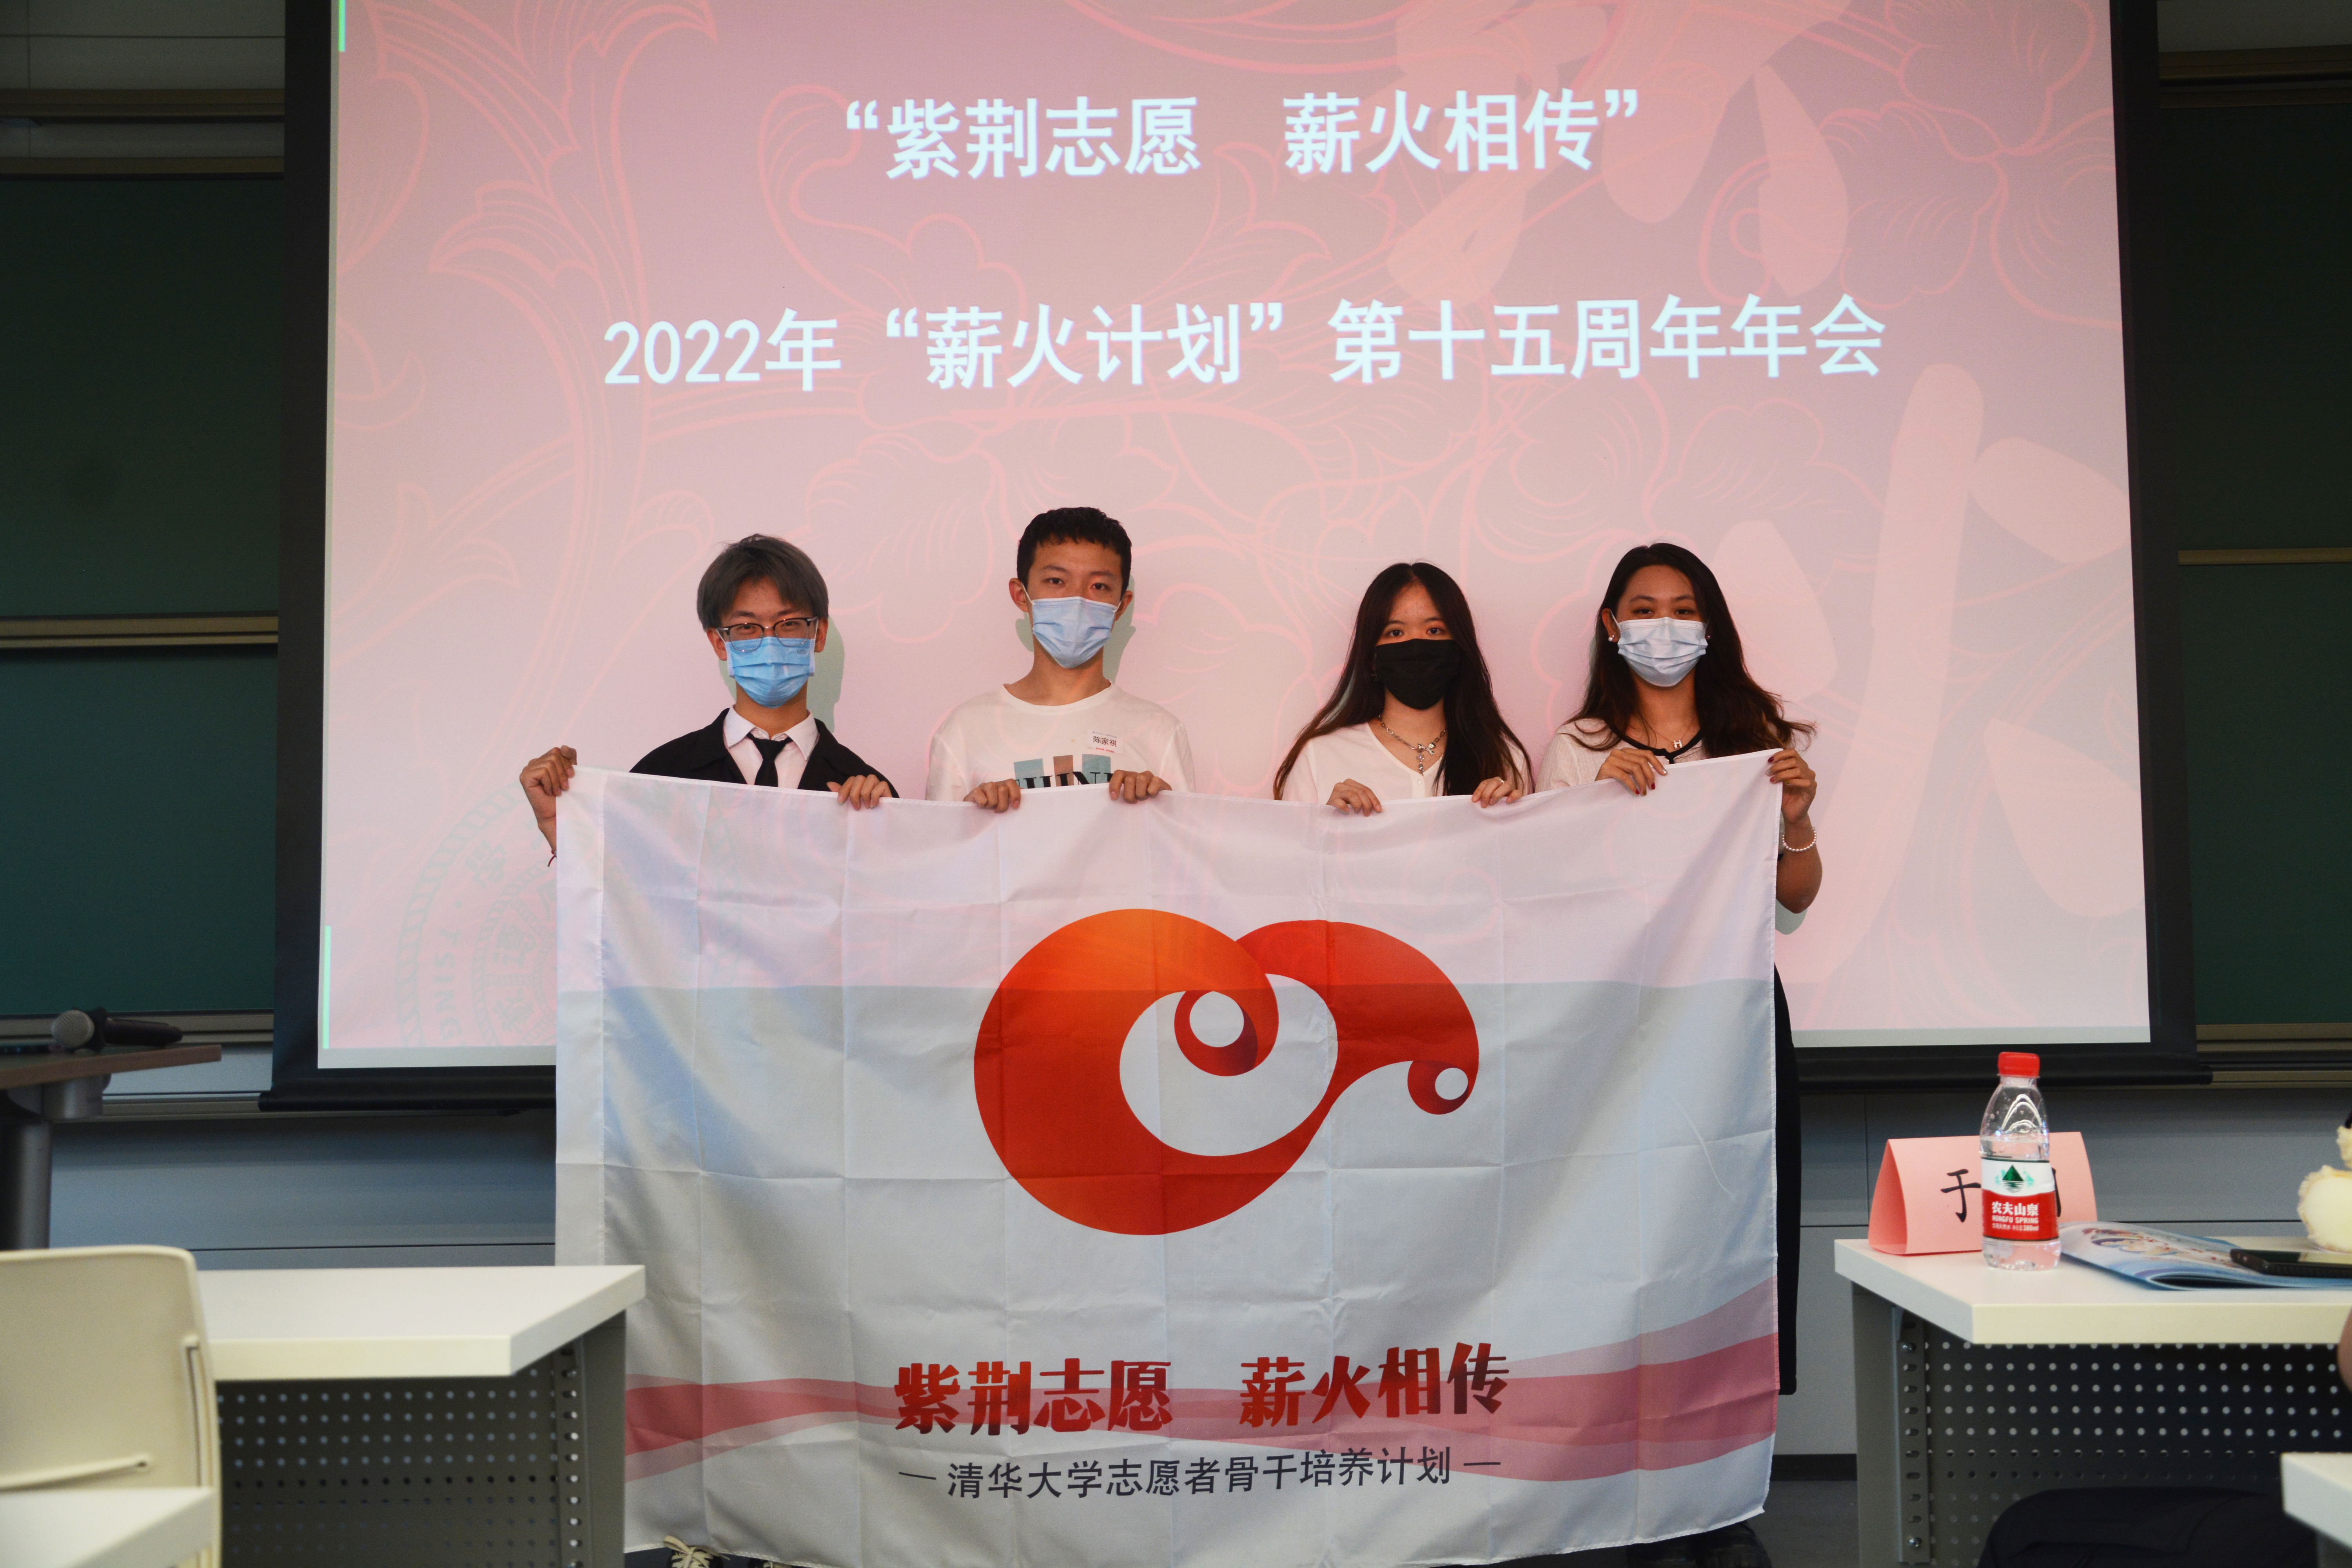 20220612-薪火年会-薪火组-旗帜交接.JPG